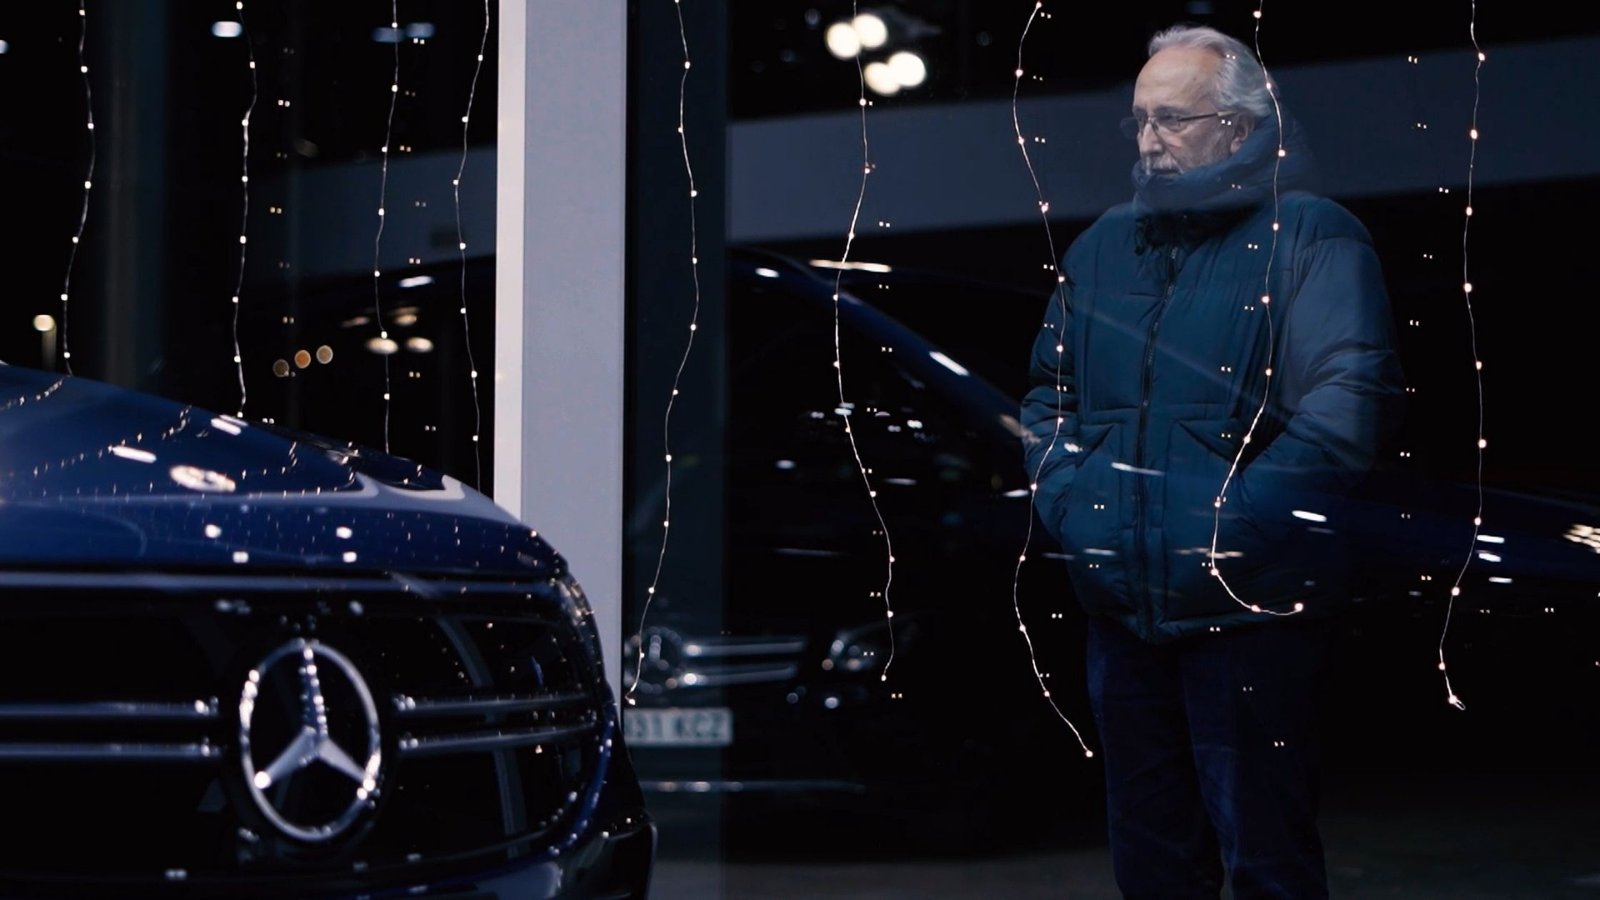 Video entrañable para Navidad de Mercedes-Benz